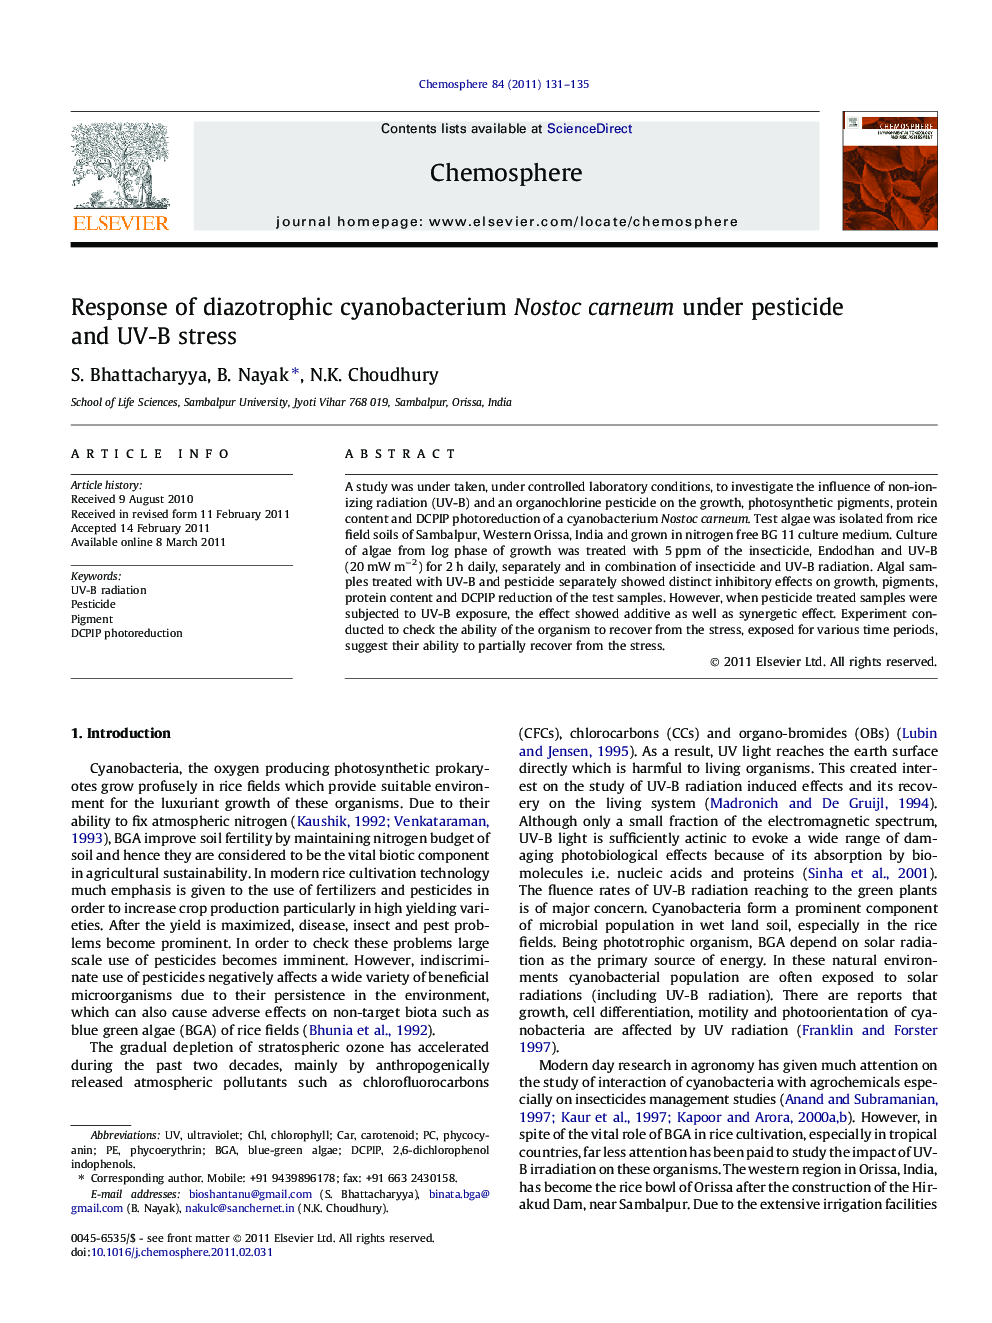 Response of diazotrophic cyanobacterium Nostoc carneum under pesticide and UV-B stress